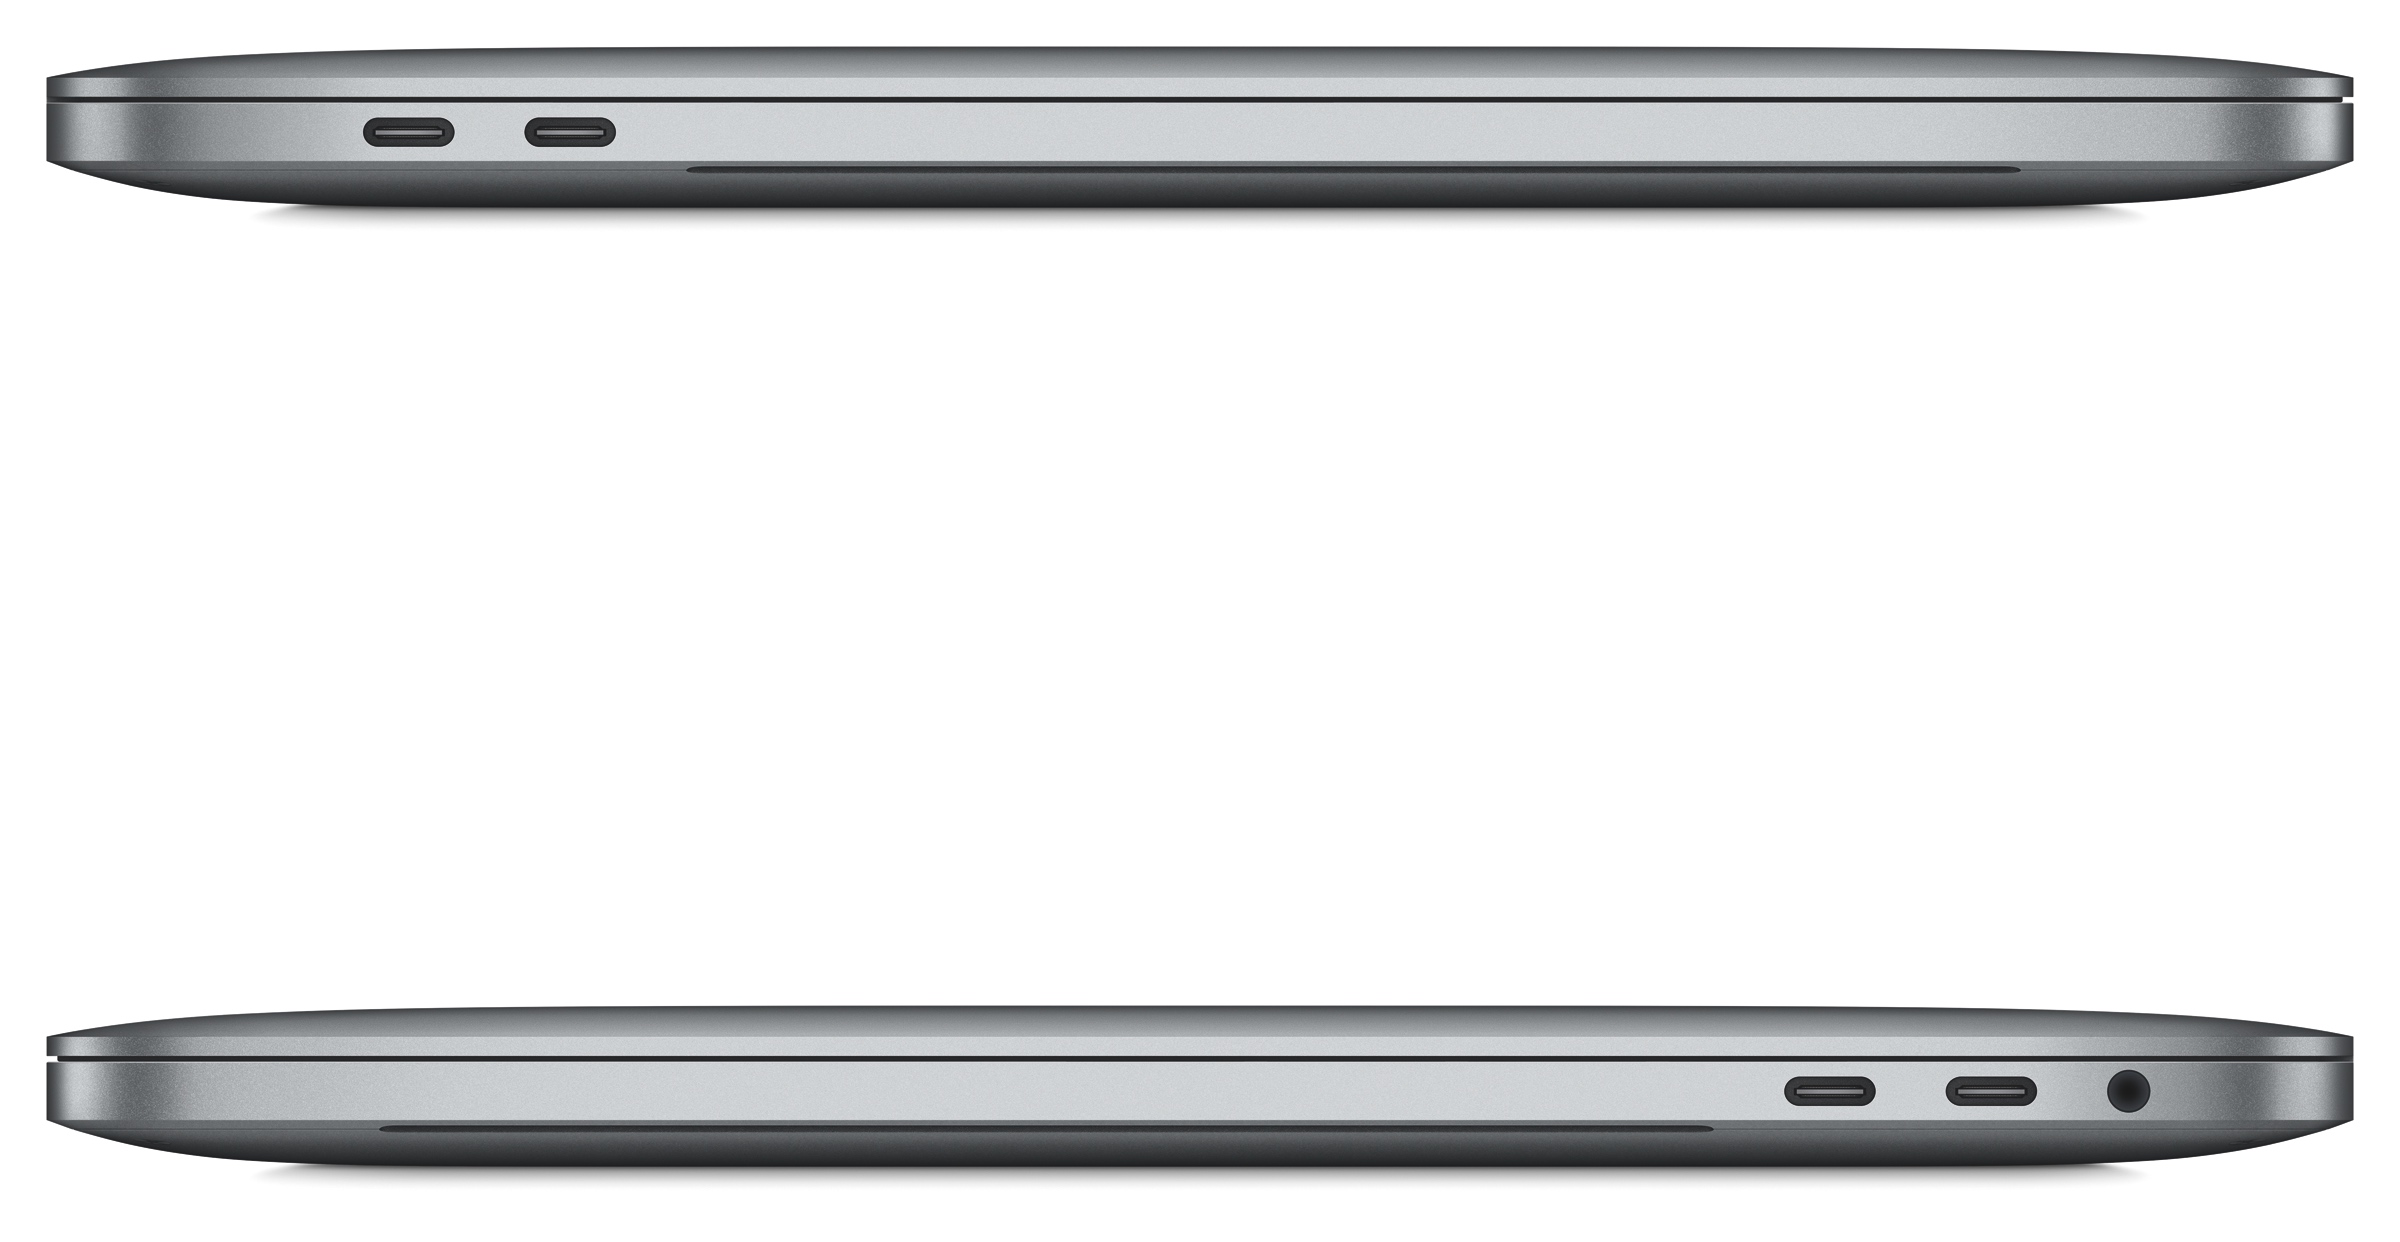 The new MacBook Pro is here | TechCrunch